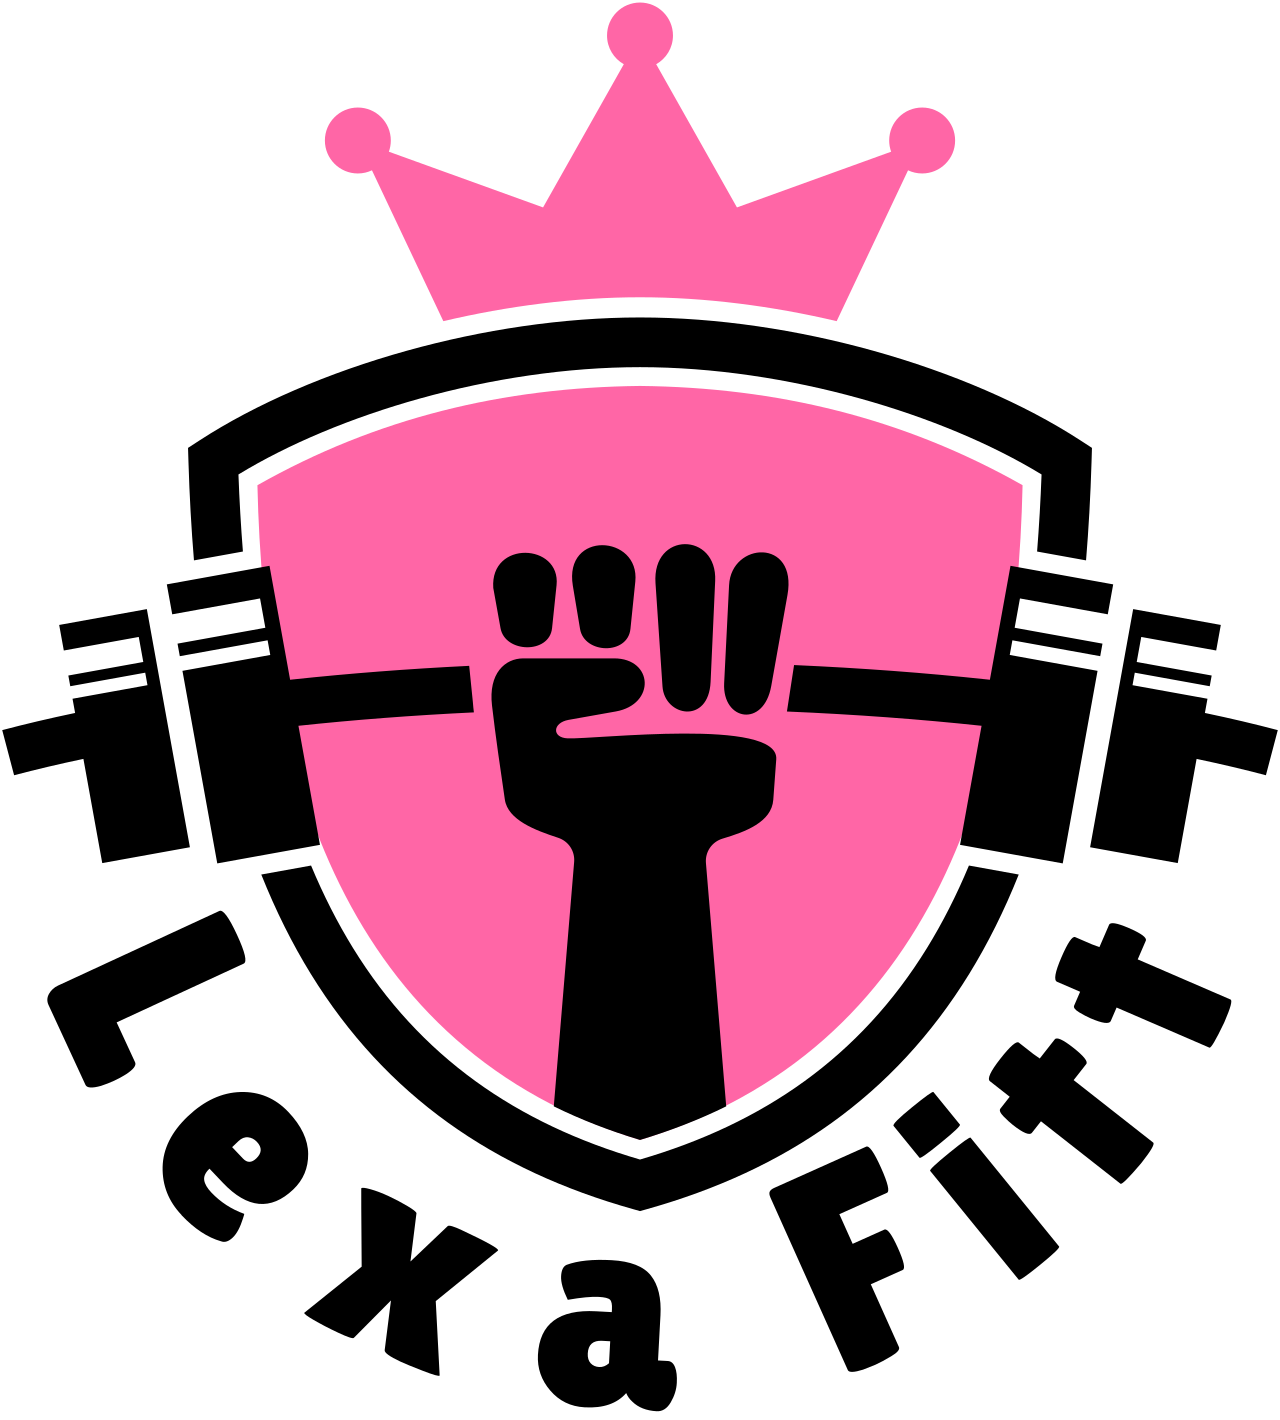 Lexa Fitt's logo